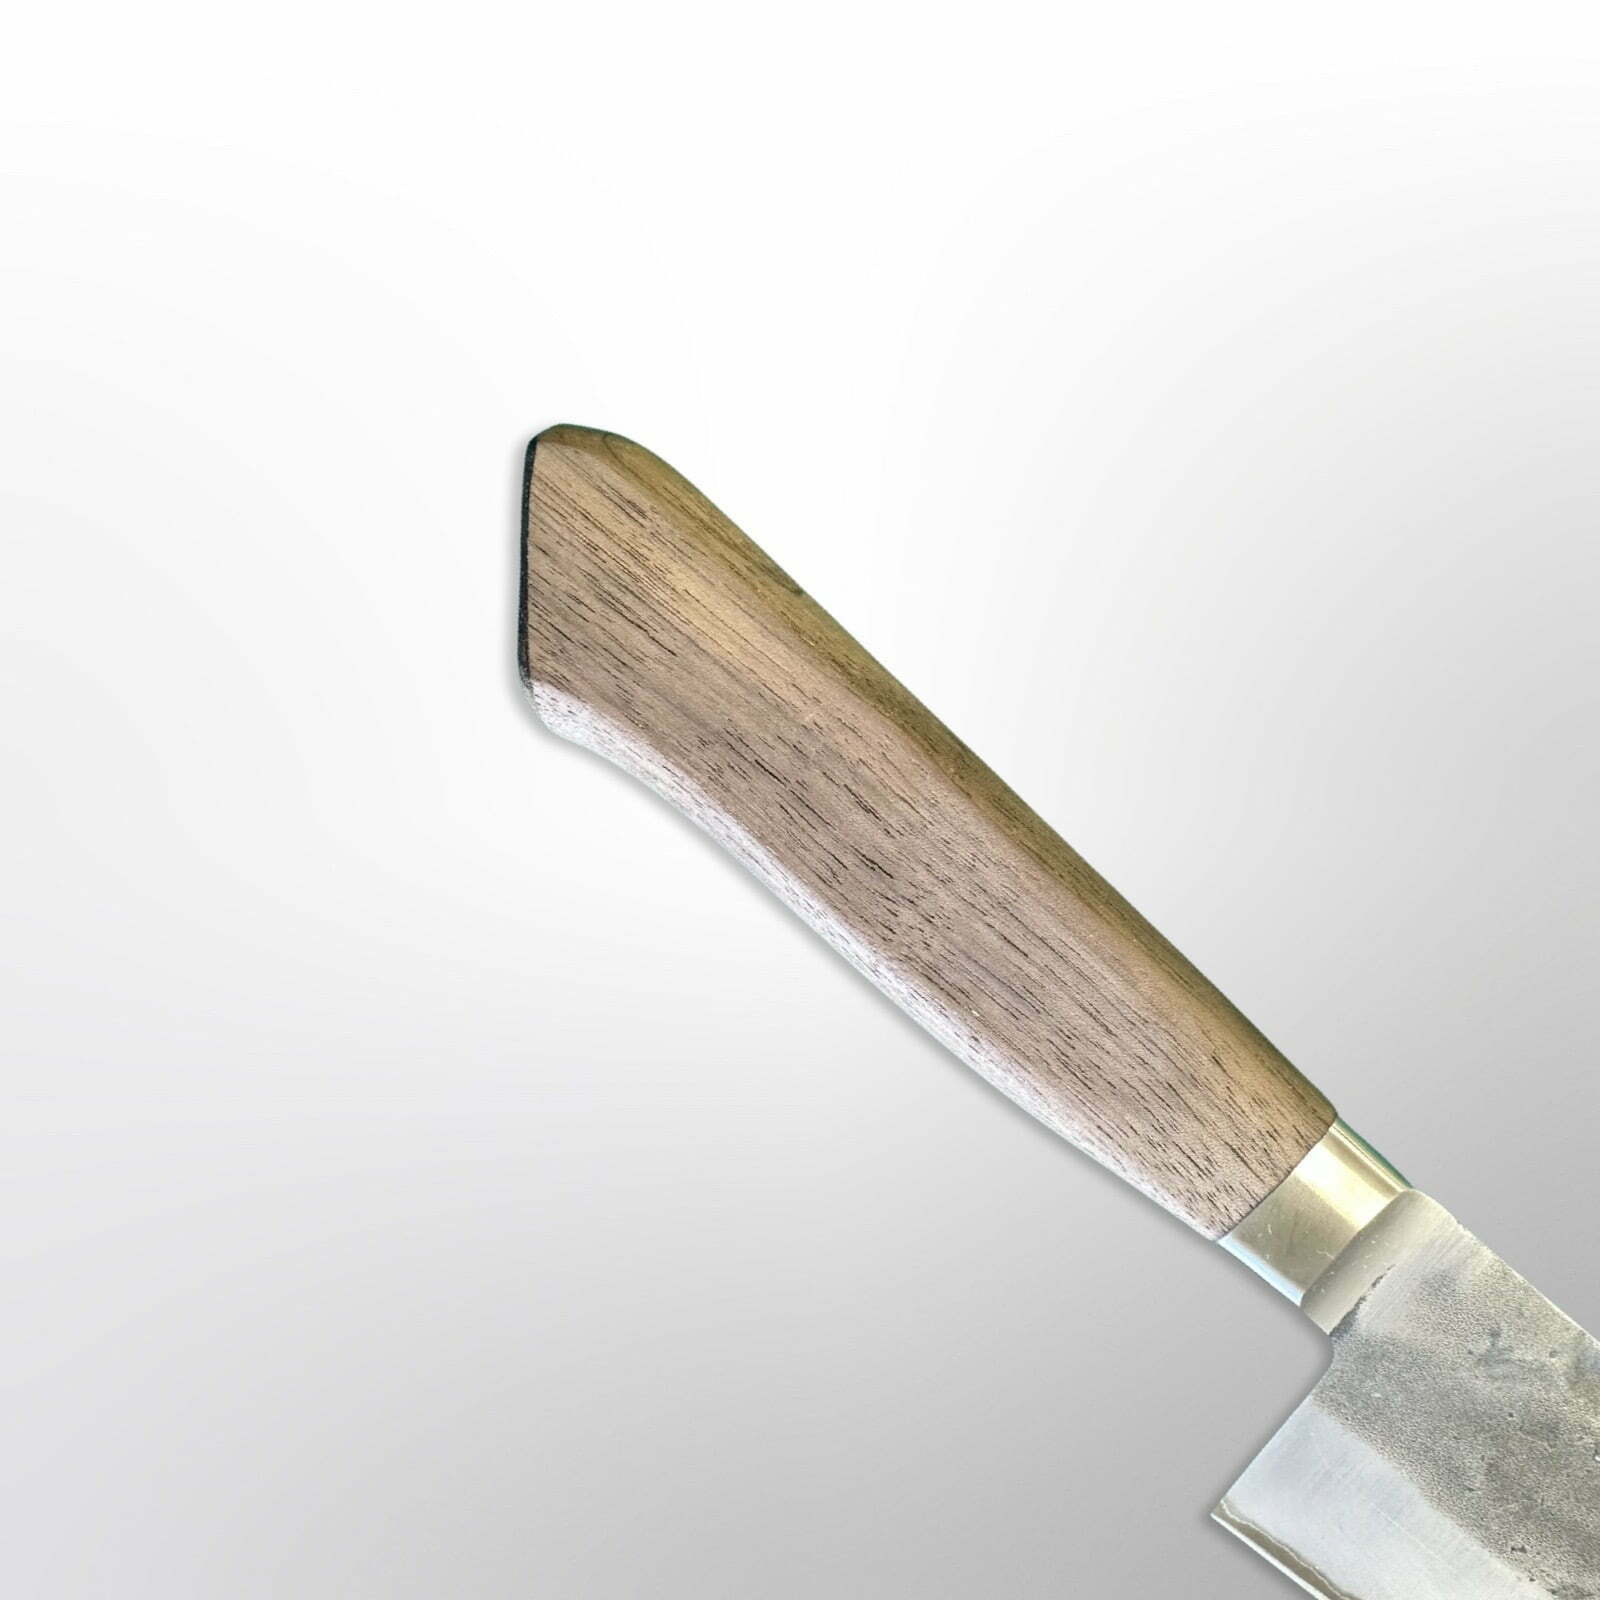  סכין שף רב-תכליתית גיוטו 240מ״מ מחוזקת 3 שכבות: פלדת פחמן יפנית אוגמי2 עטופה פלדת אל-חלד גימור נשיג׳י טדאפוסה יפן